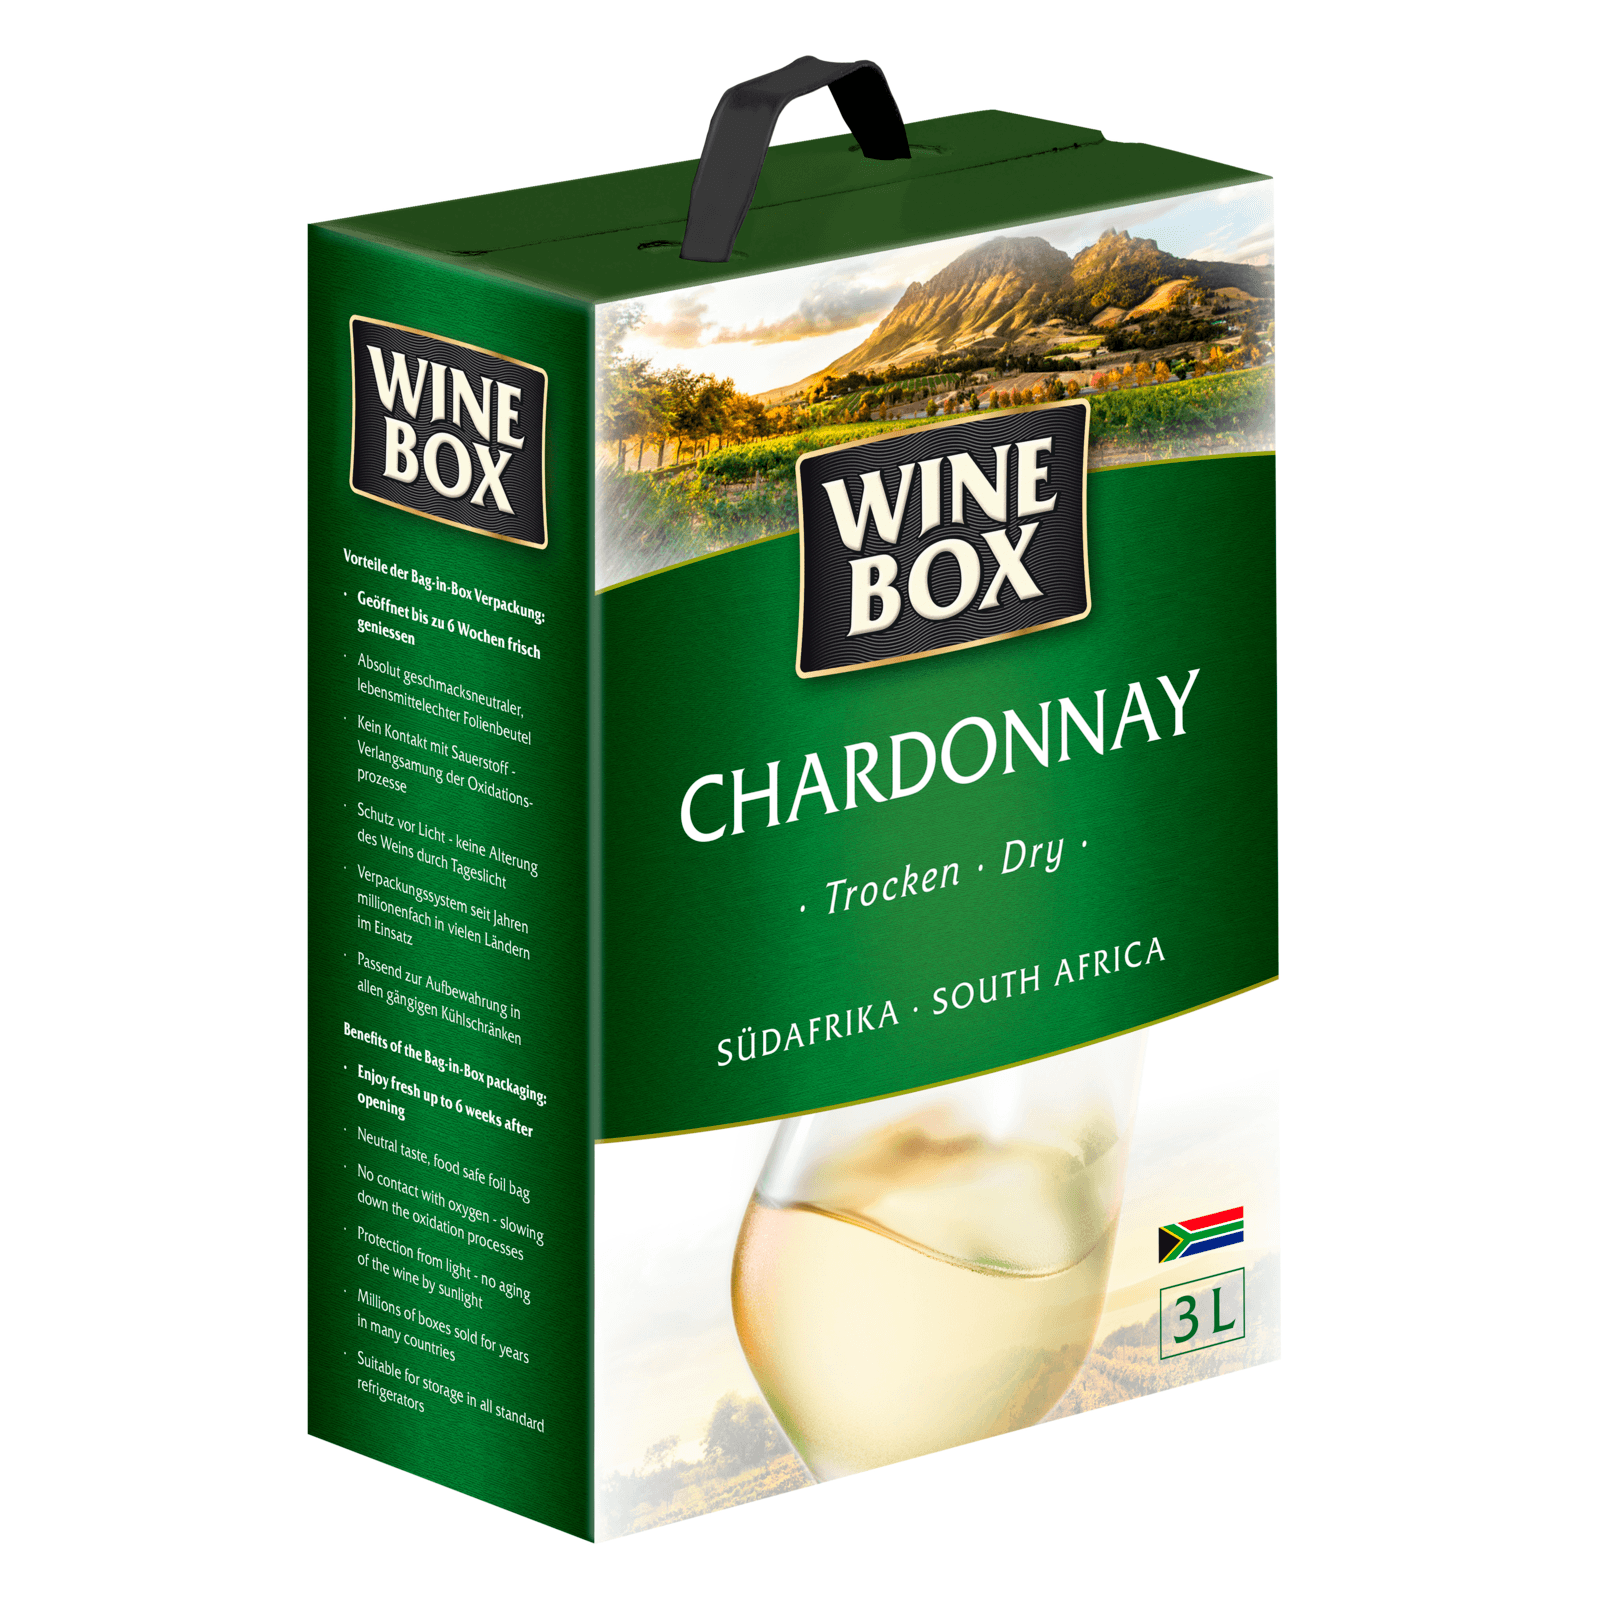 Wine Box bestellen! Weißwein bei 3l REWE trocken online Chardonnay